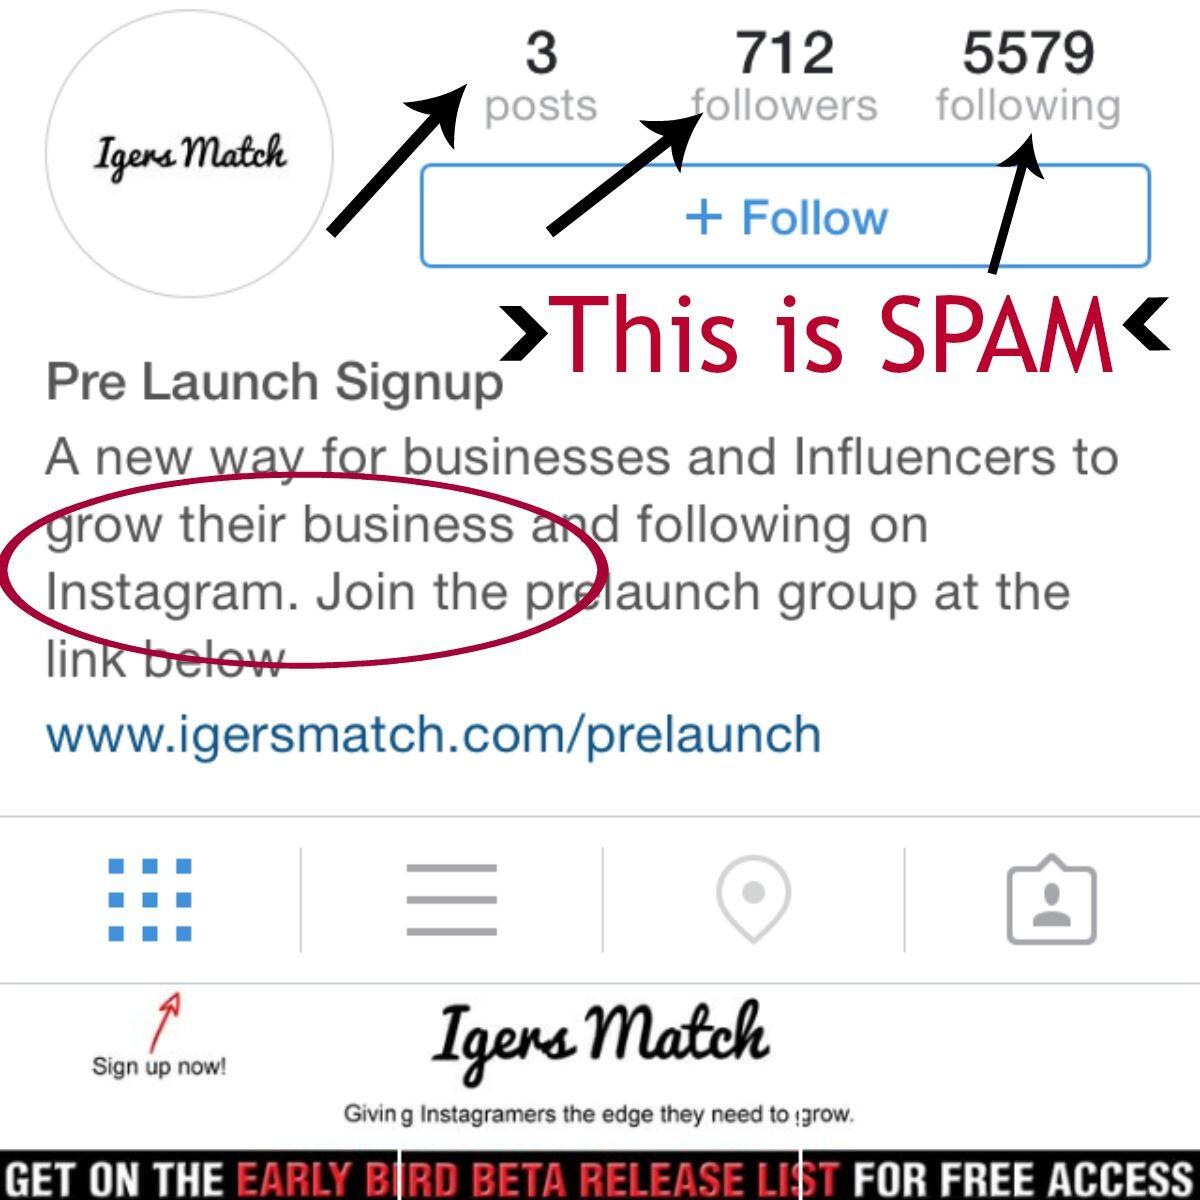 7 cara cek akun instagram asli atau palsu yang mudah dilakukan - cek followers instagram asli atau palsu